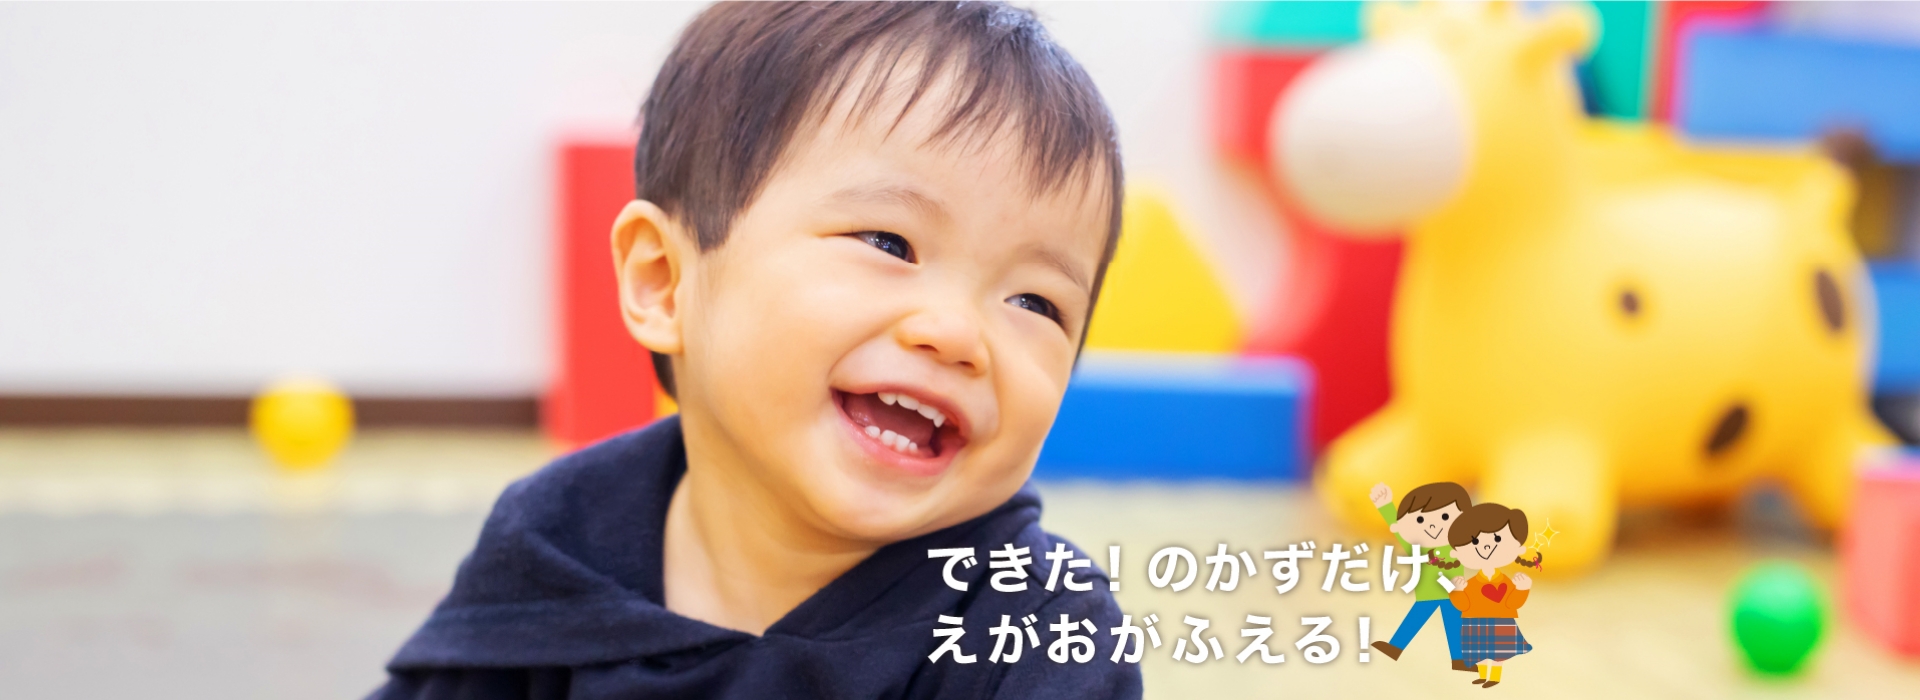 奈良県にある障害福祉サービス事業所「ふれあいの杜」